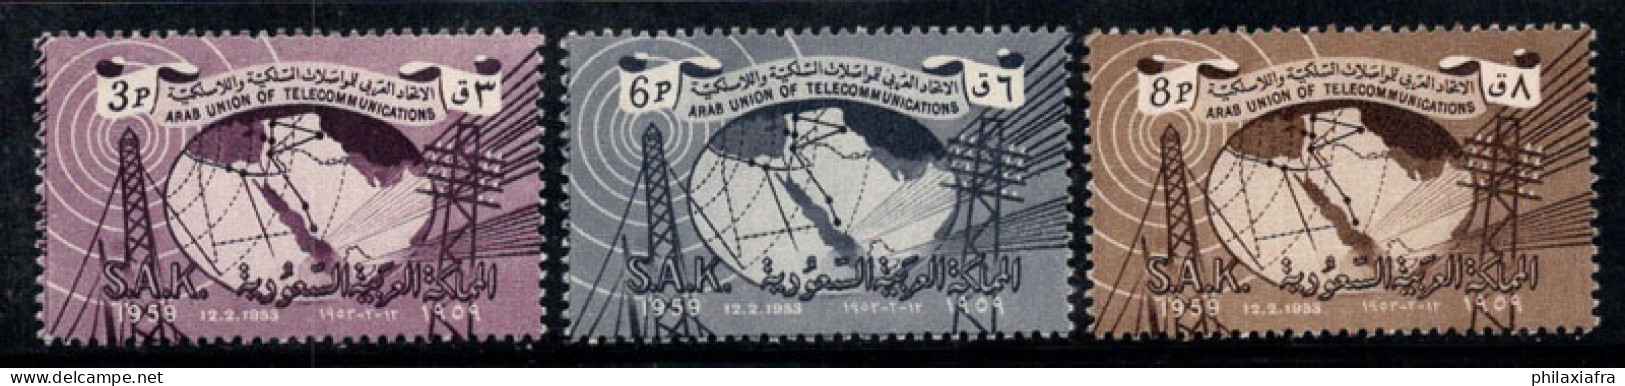 Arabie Saoudite 1961 Mi. 118-20 Neuf ** 100% Poteaux Radio Et Télégraphiques - Arabie Saoudite